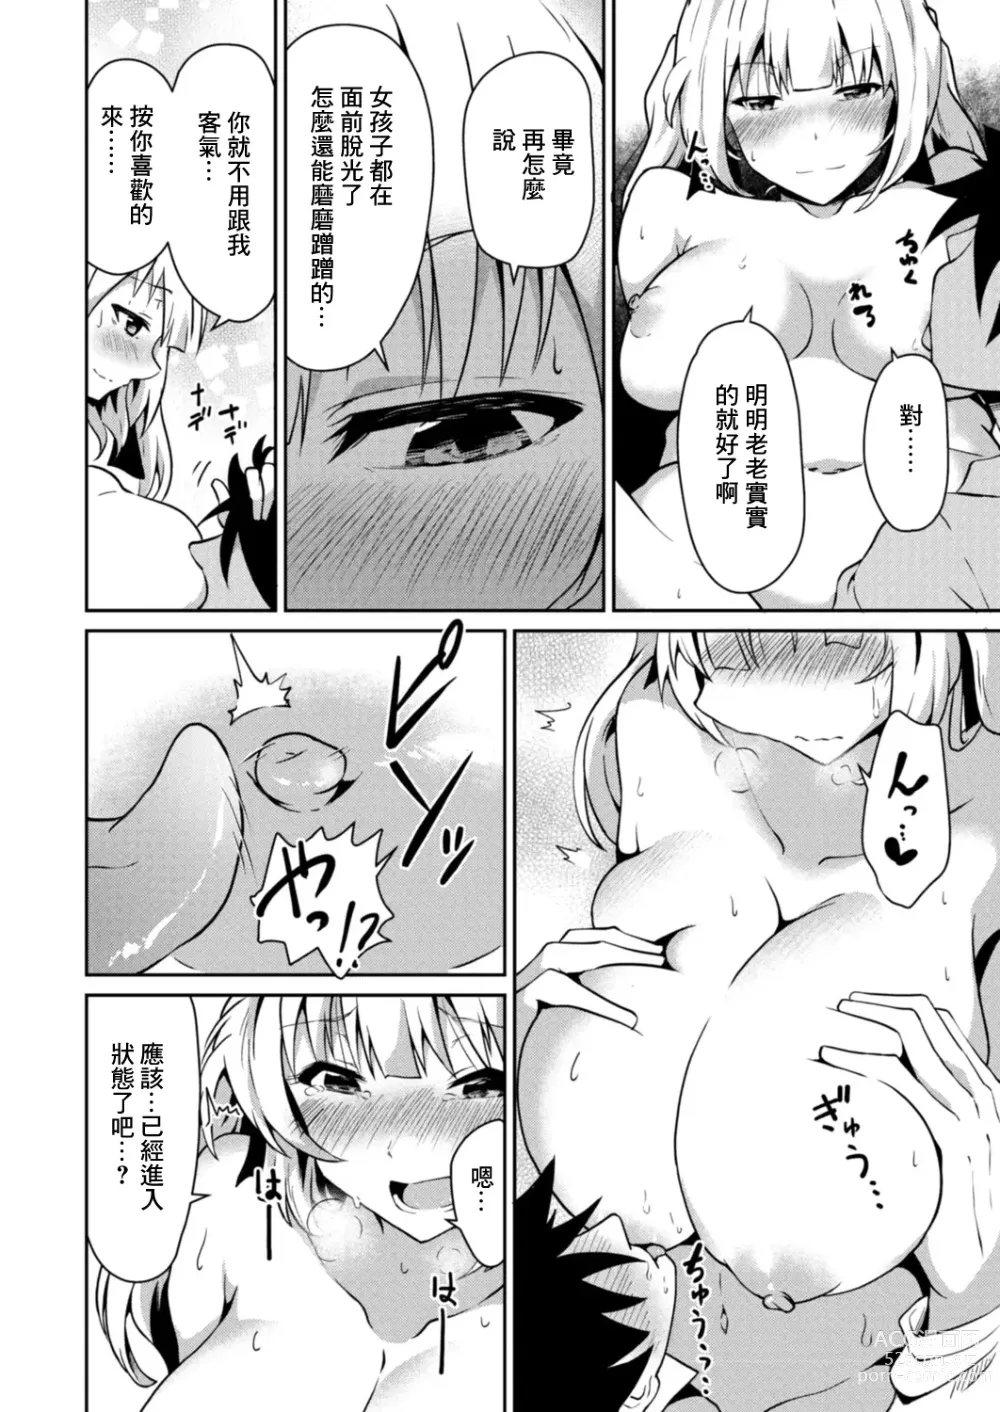 Page 12 of manga Shinjitsu no Katachi